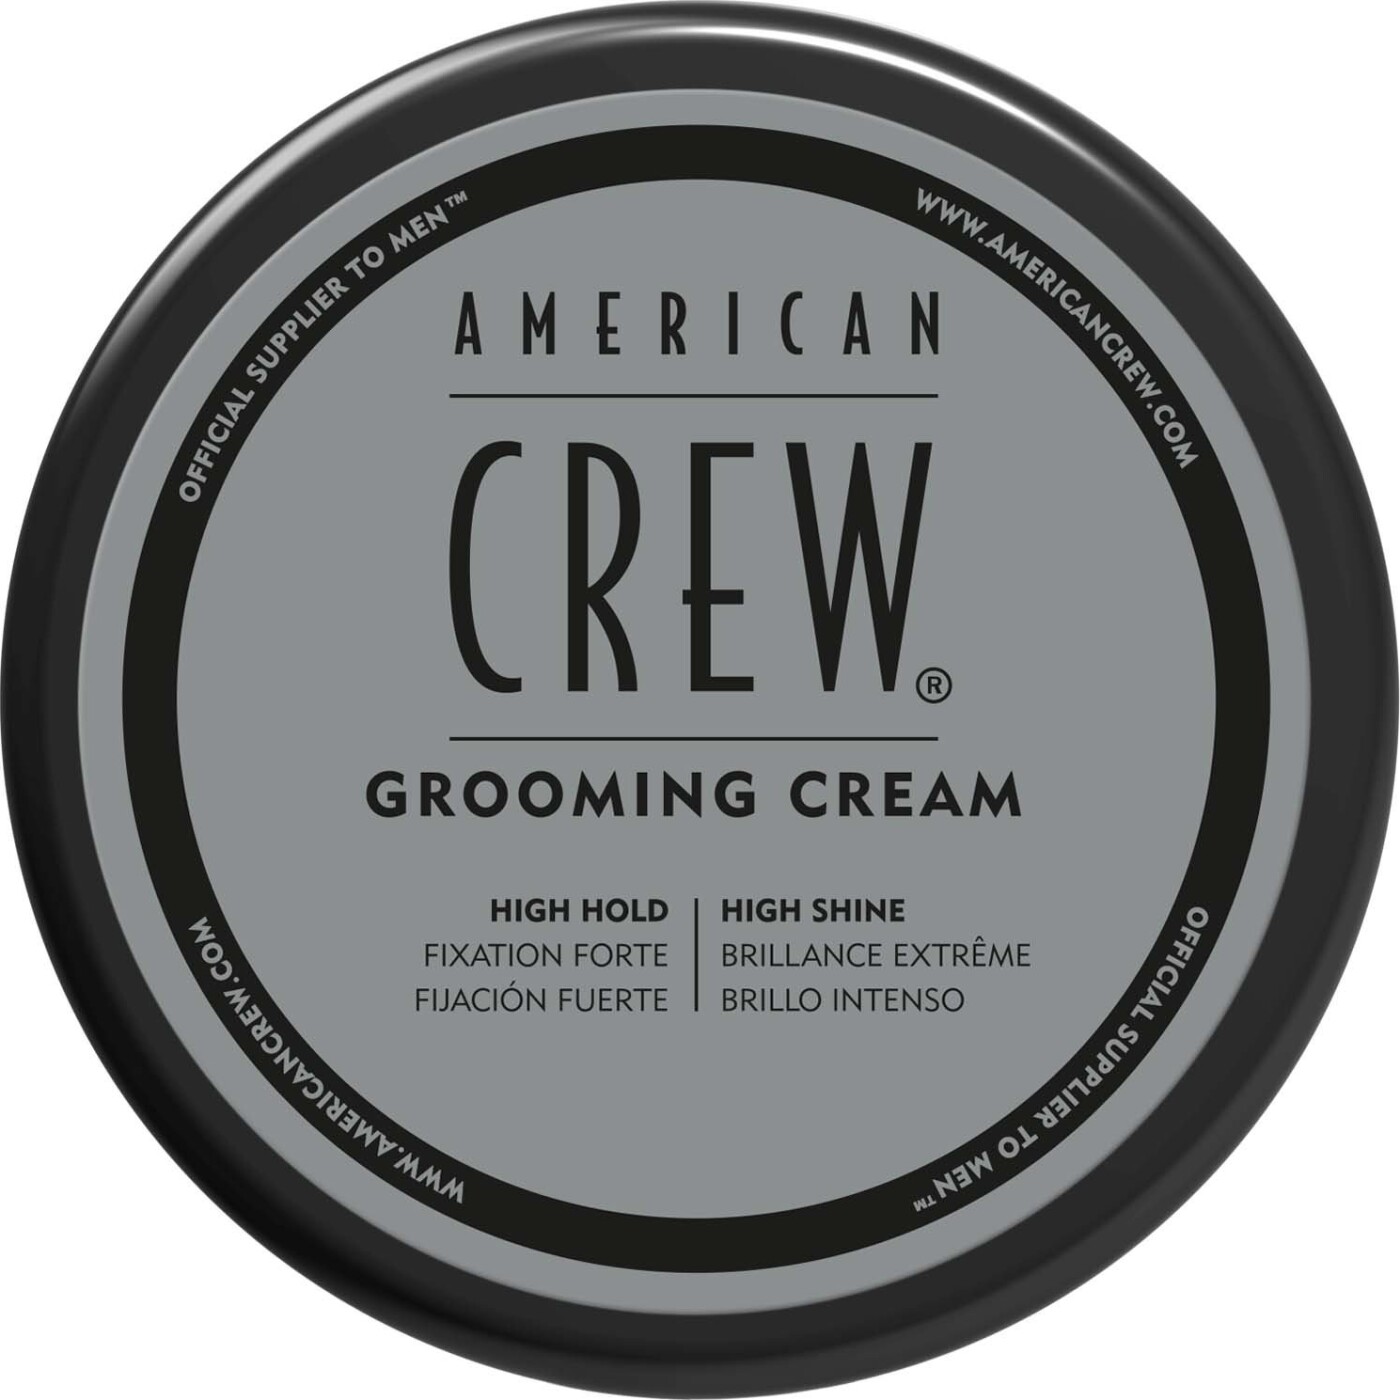 Billede af American Crew - Grooming Cream - 85 G hos Gucca.dk